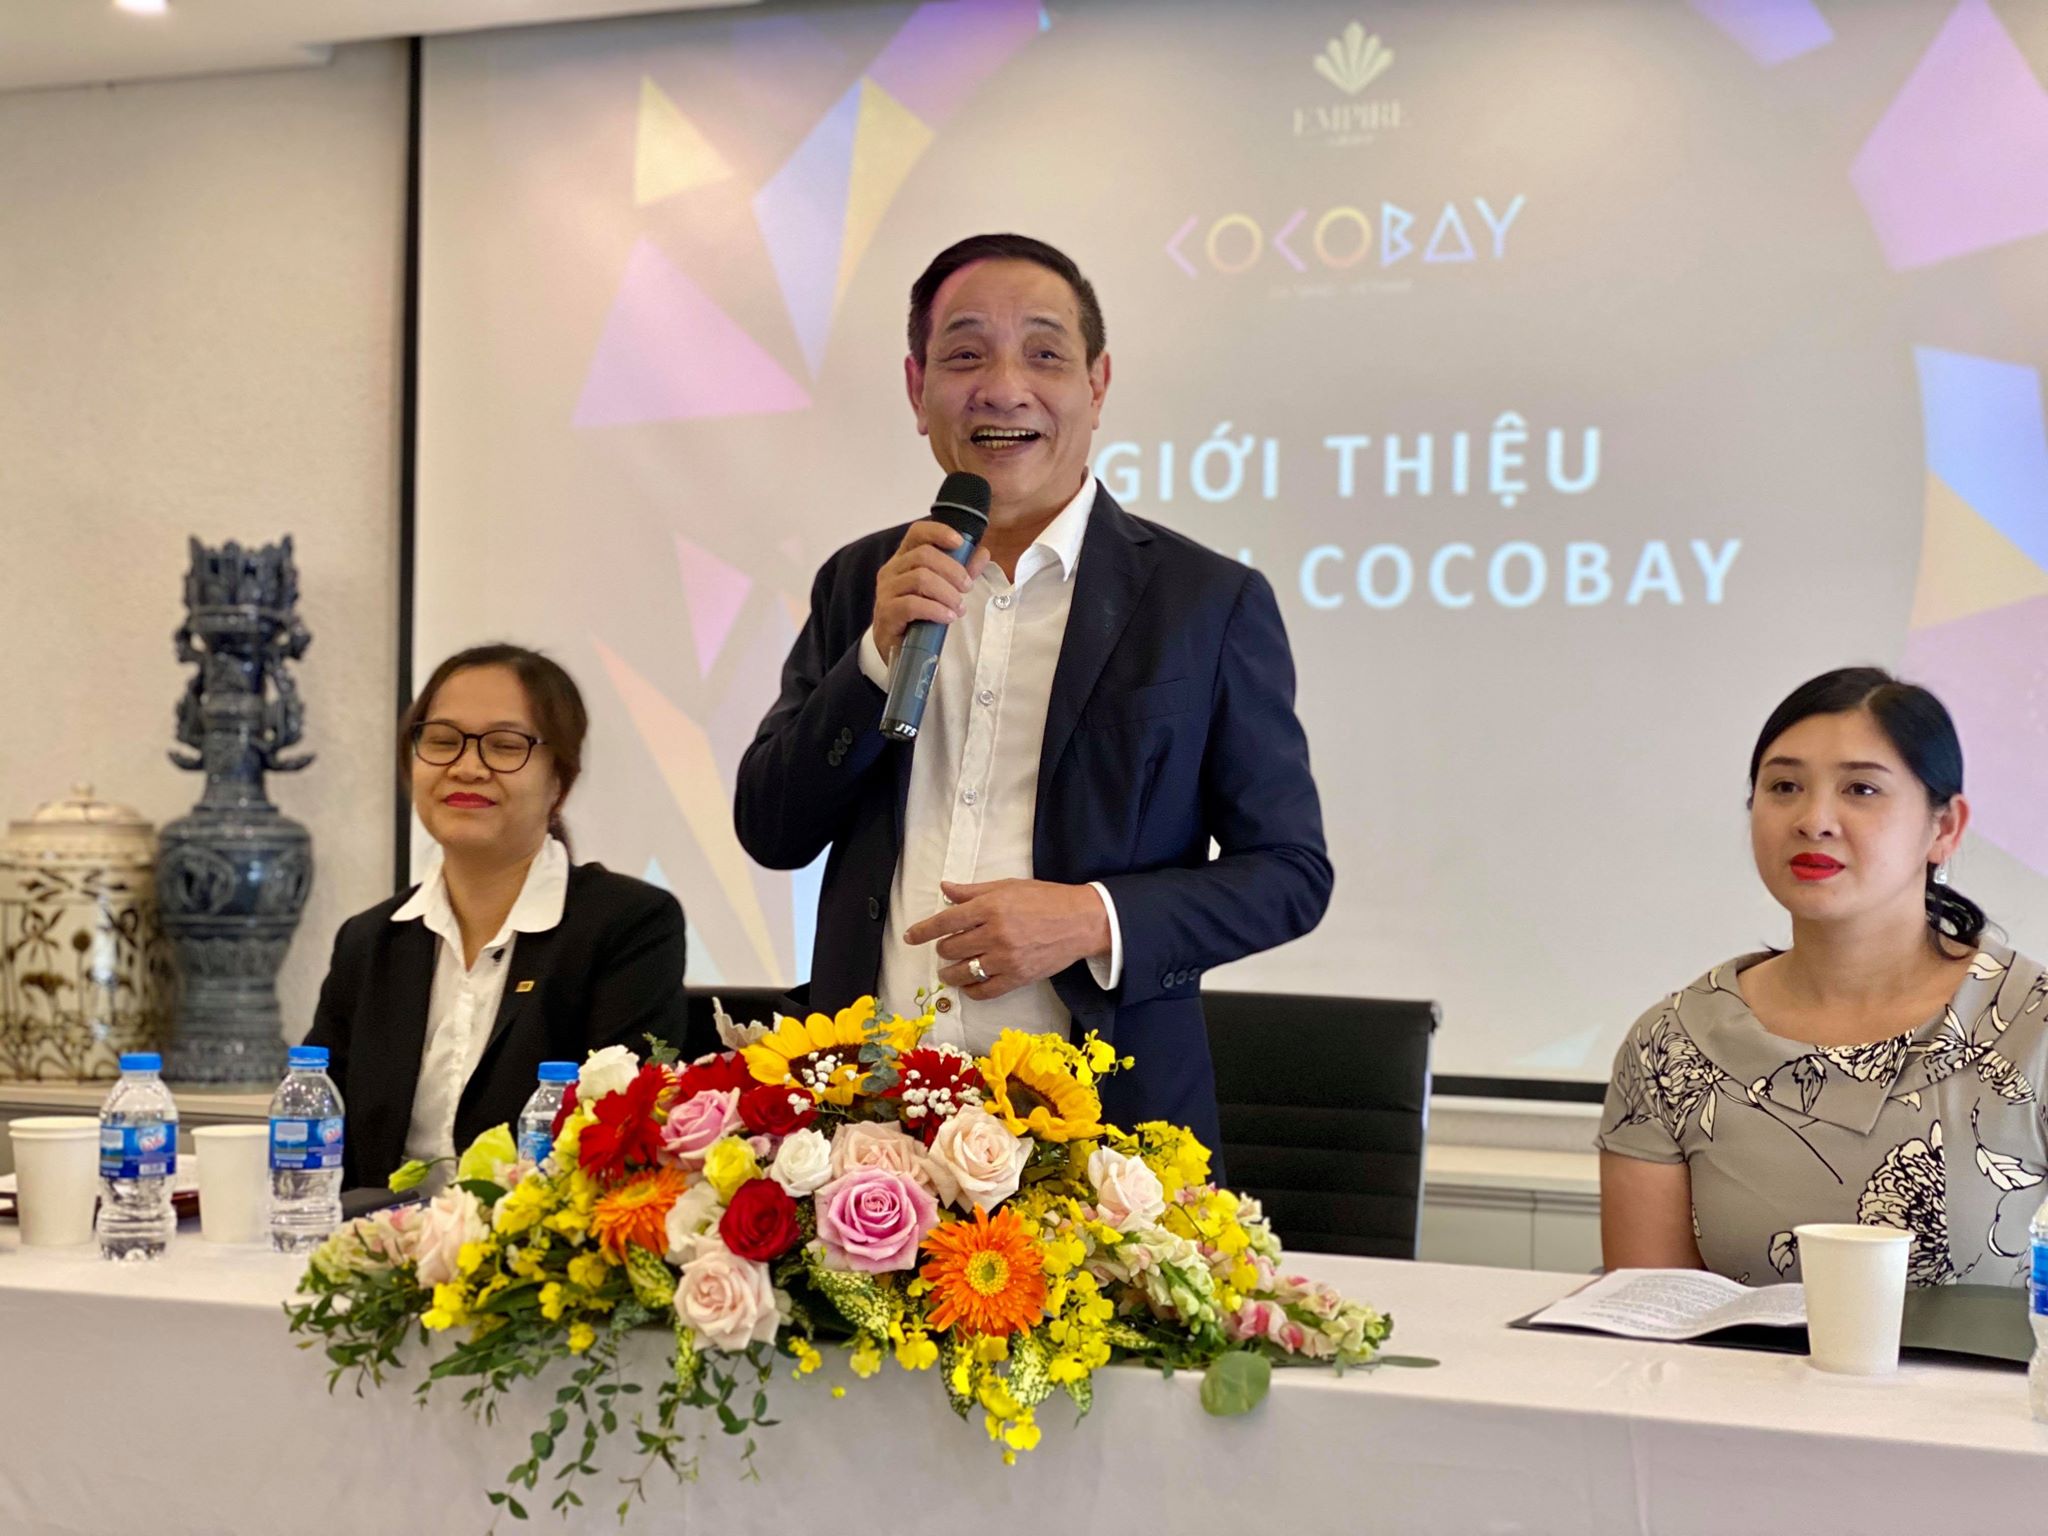 Ông Mai Huy Tân, khách hàng bỏ 600 tỷ mua condotel tại Cocobay Đà Nẵng đồng ý nhận nhà tự kinh doanh